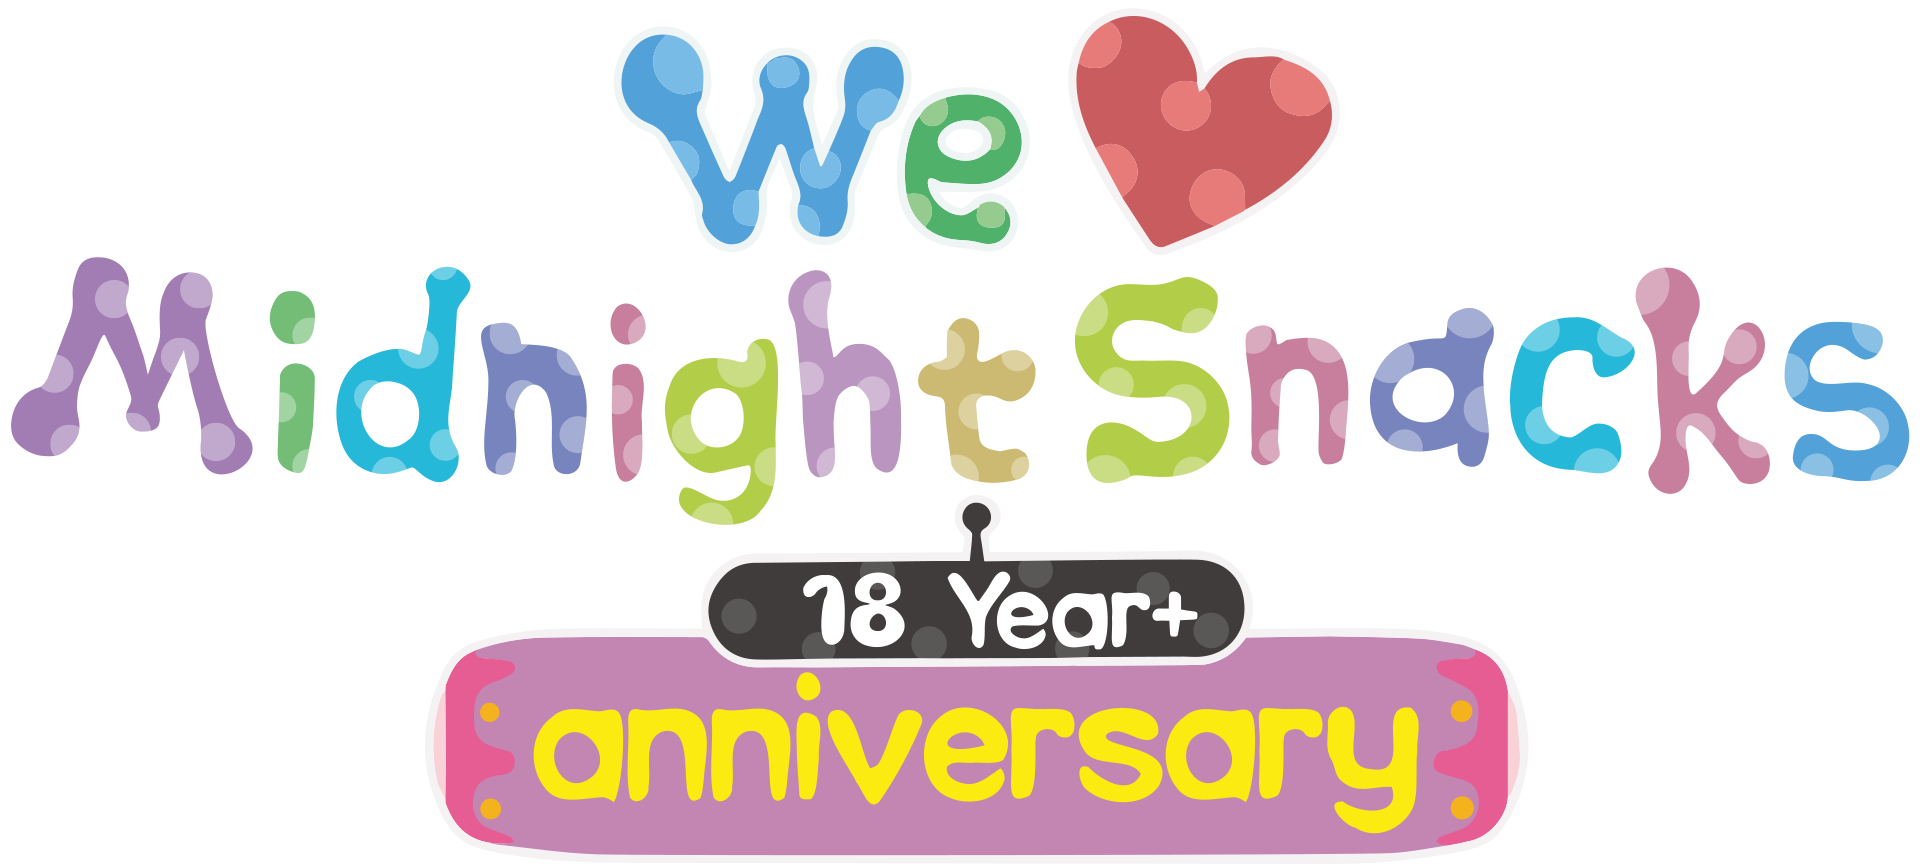 Midnight Snacks 18 Year+ anniversary